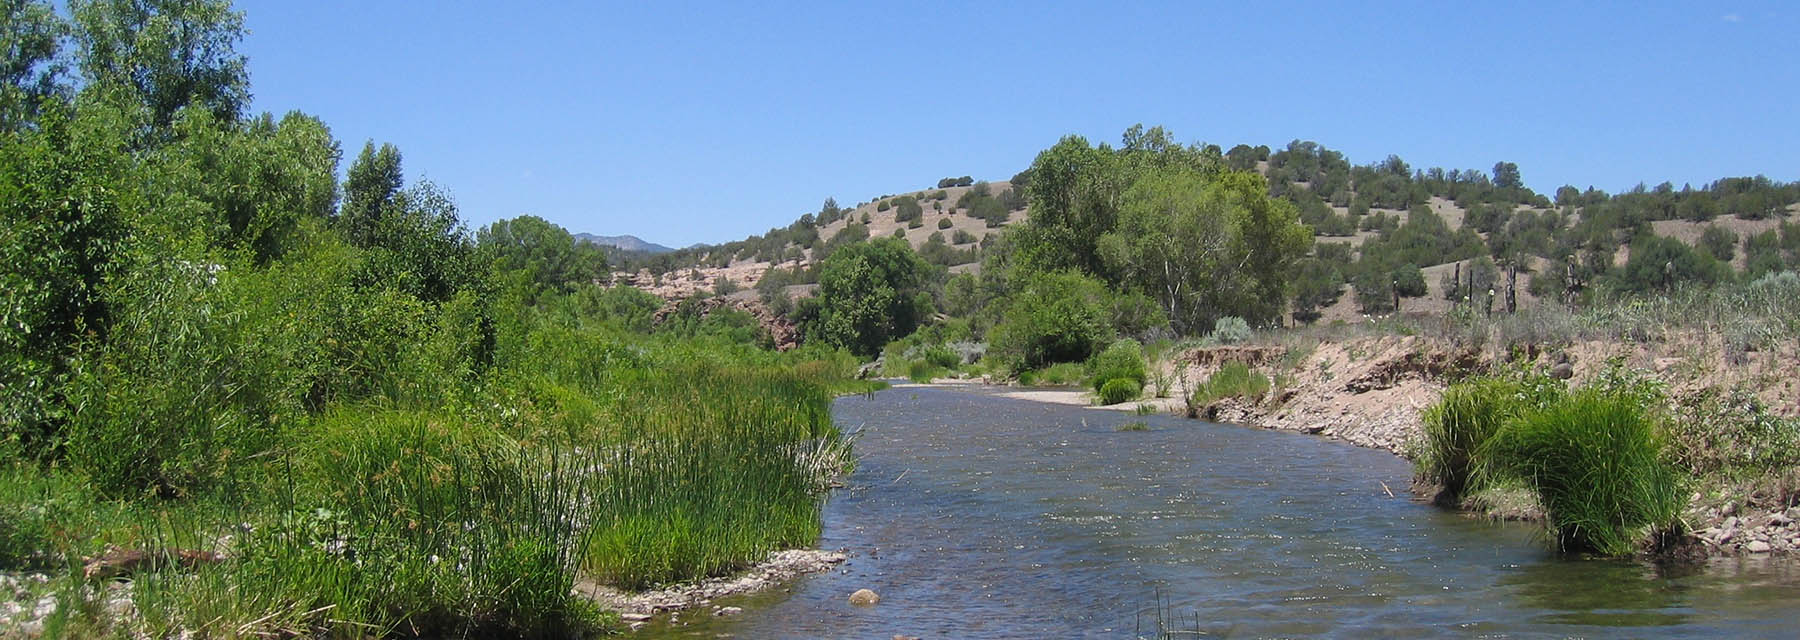 Ein Wasserfluss, der durch eine sonnige New Mexico-Landschaft fließt